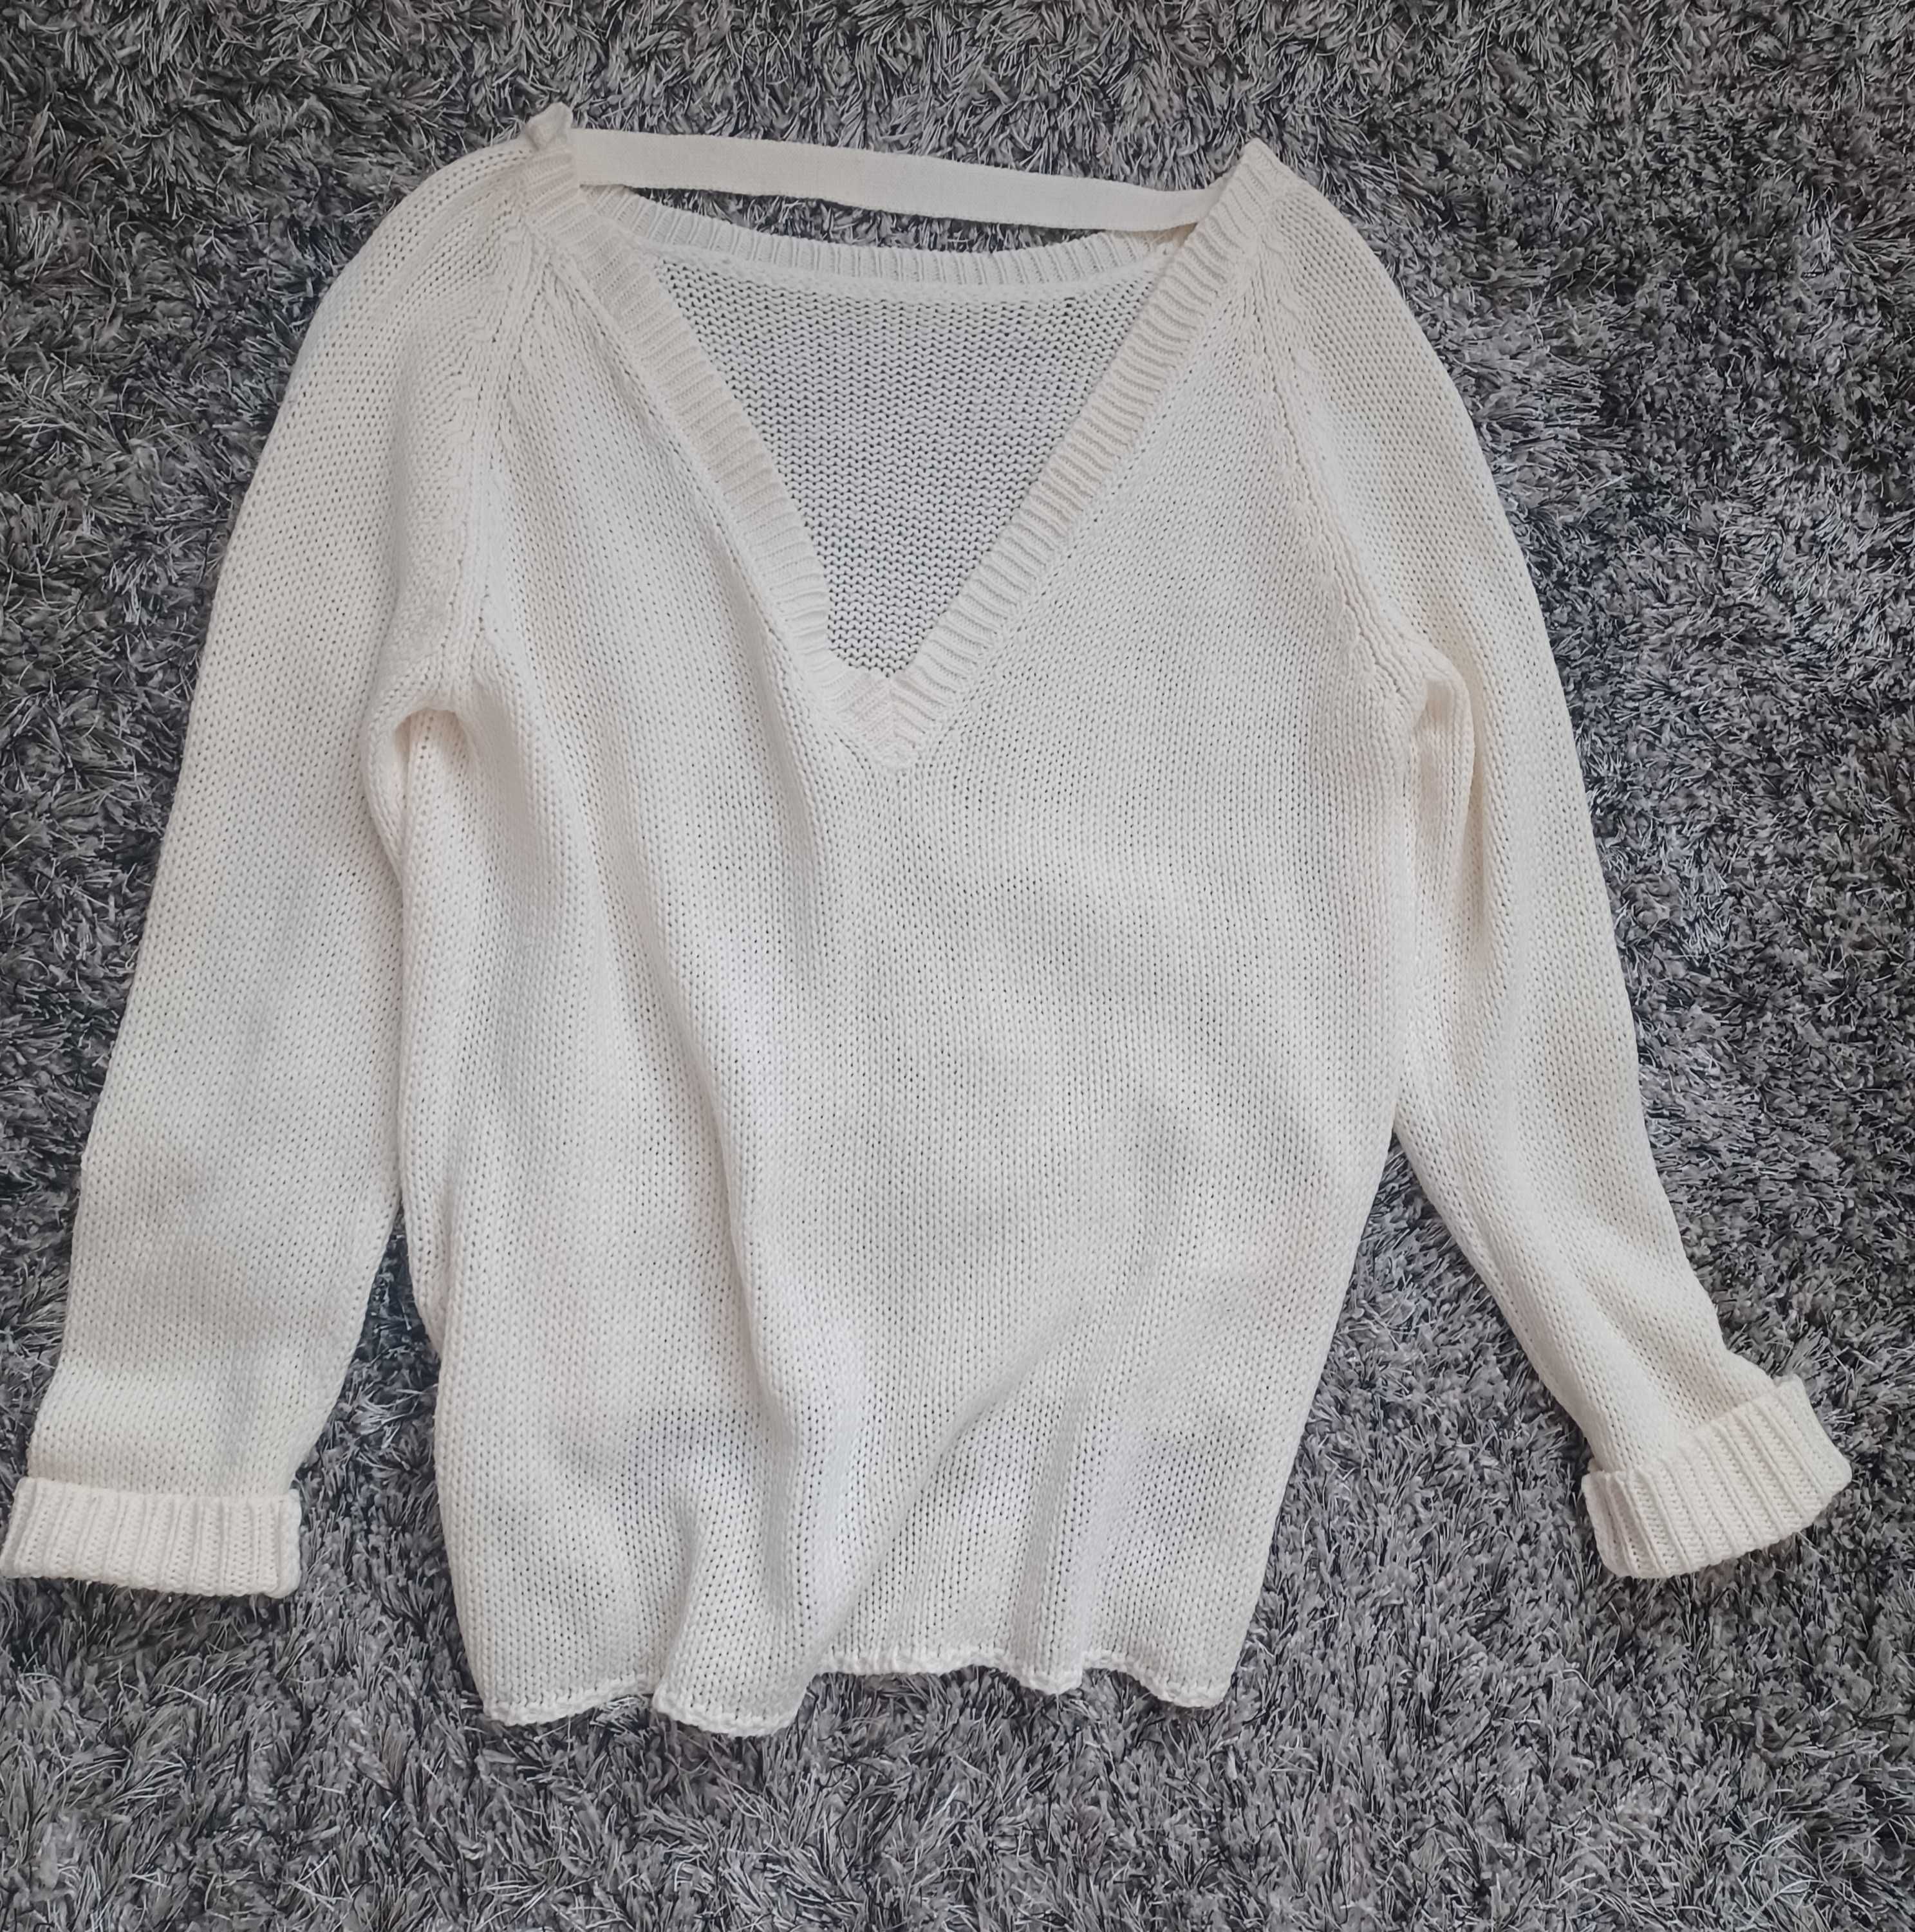 Vero Moda - cudny kremowy sweterek z wycięciem na plecach